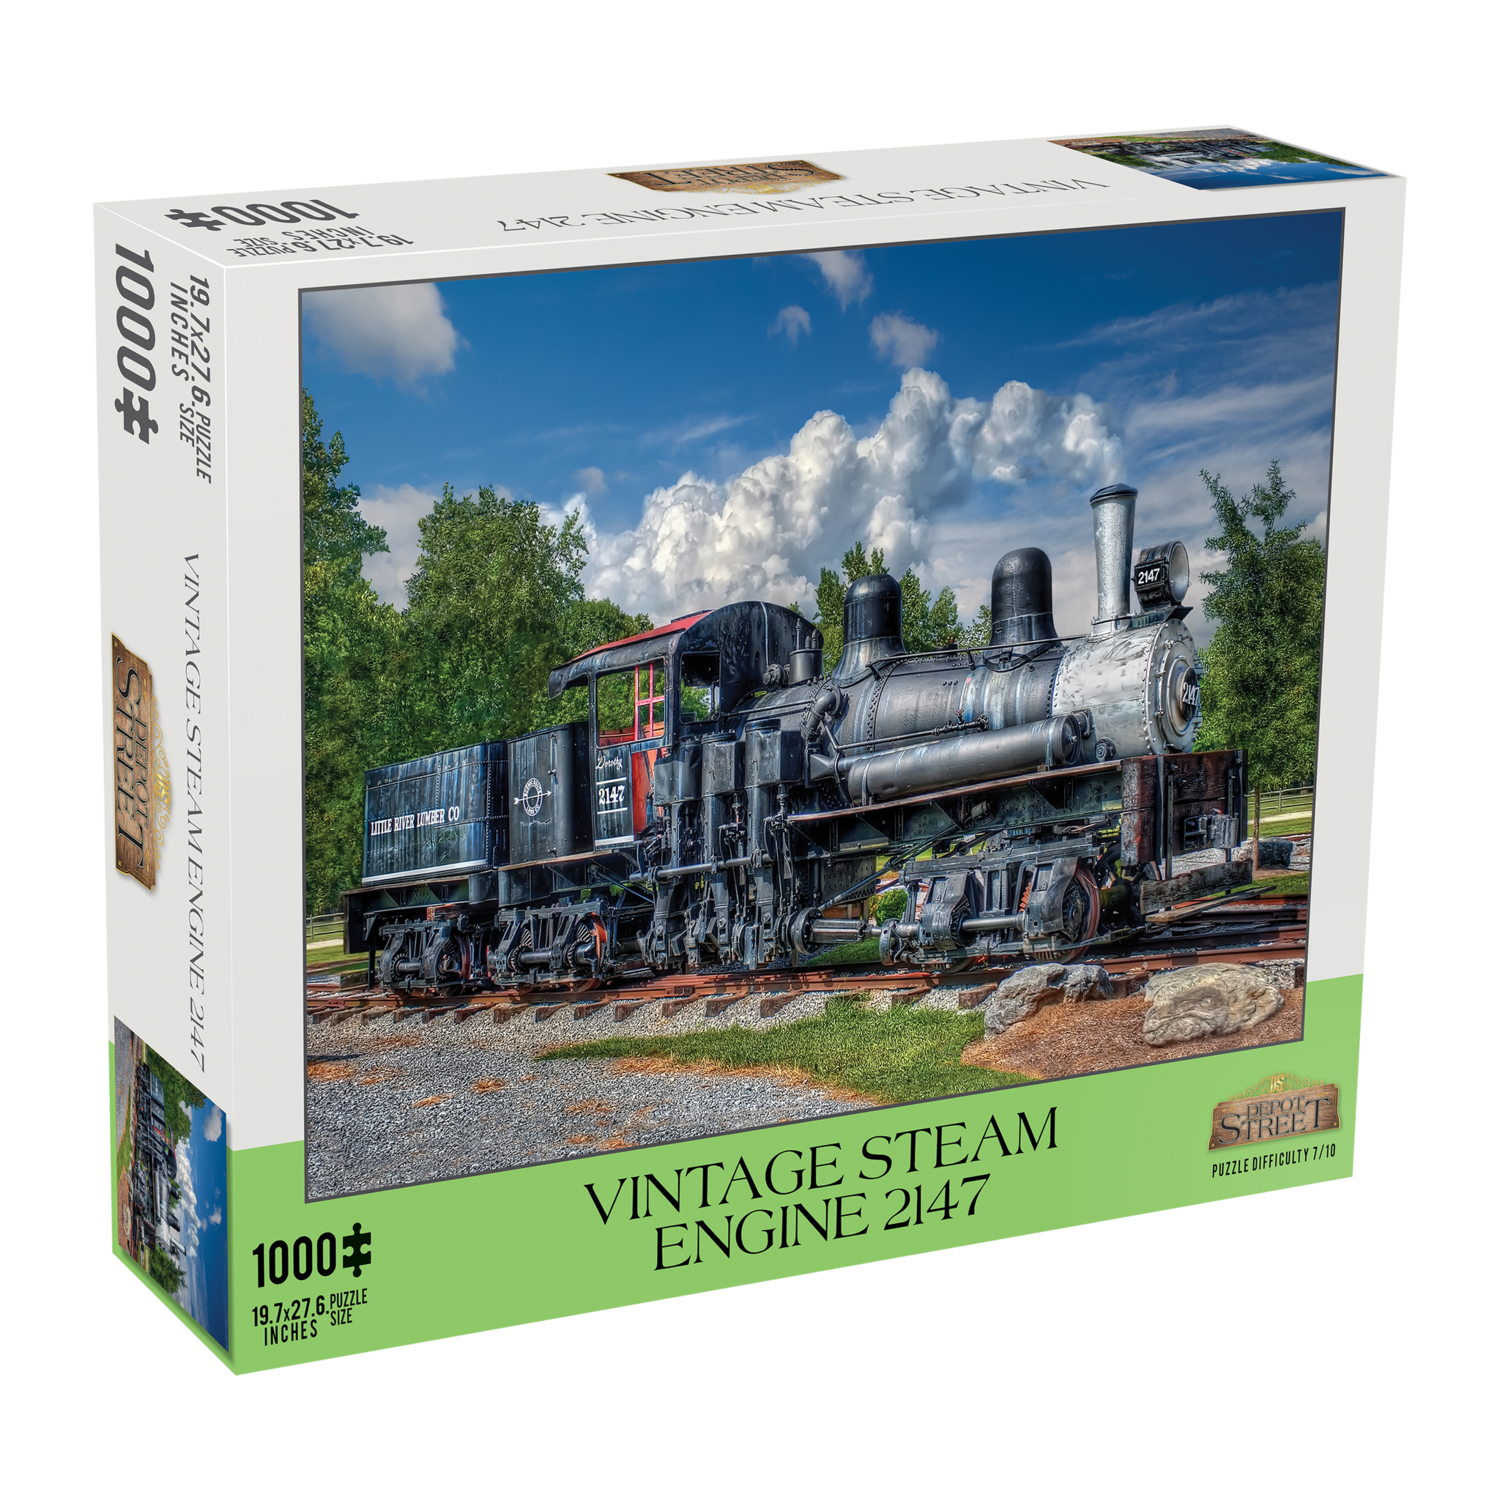 Vintage Steam Engine 2147 1000 Piece Jigsaw Puzzle